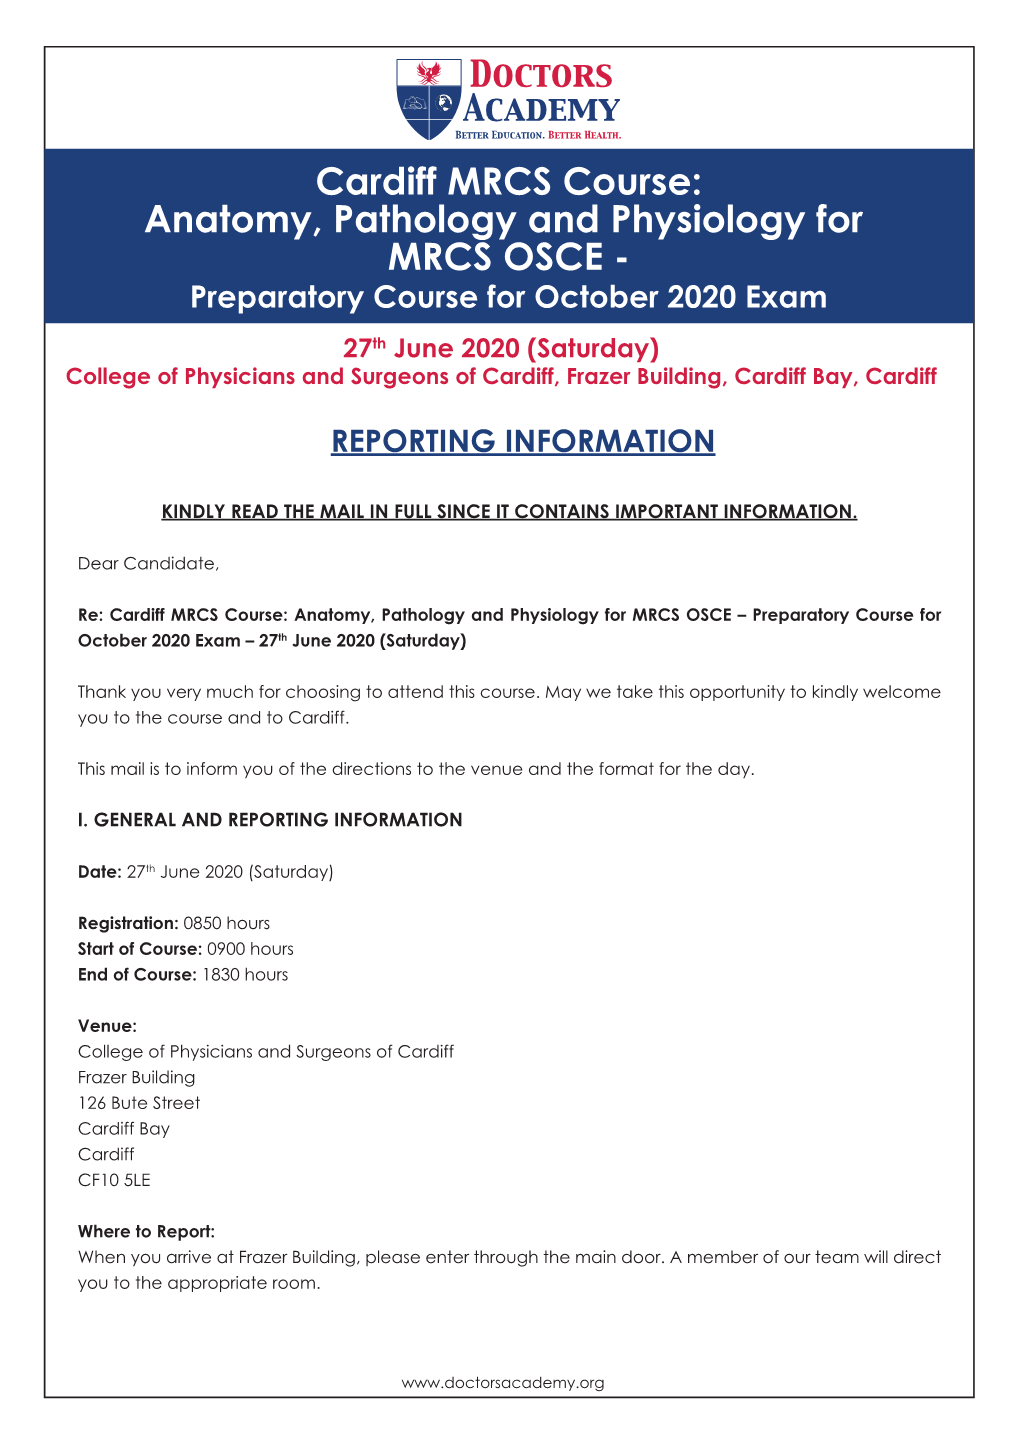 Cardiff MRCS Course: Anatomy, Pathology And